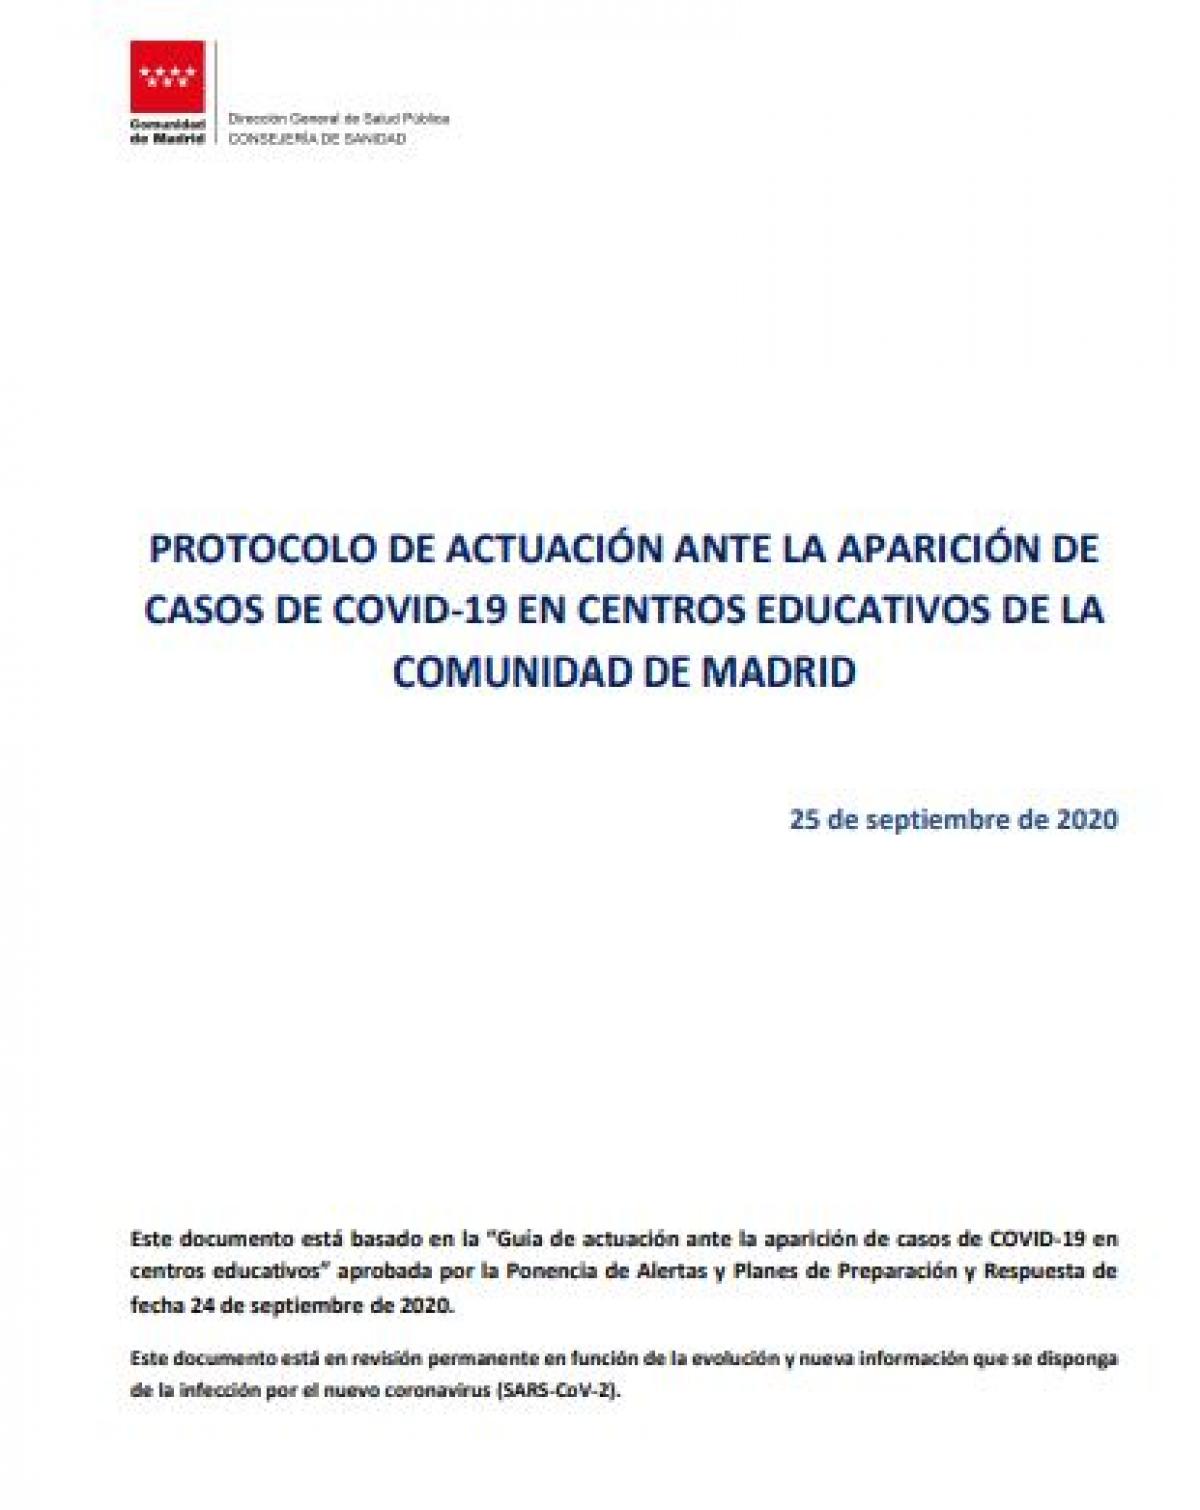 Protocolo de actuación ante la aparición de casos de covid-19 en centros educativos de la Comunidad de Madrid